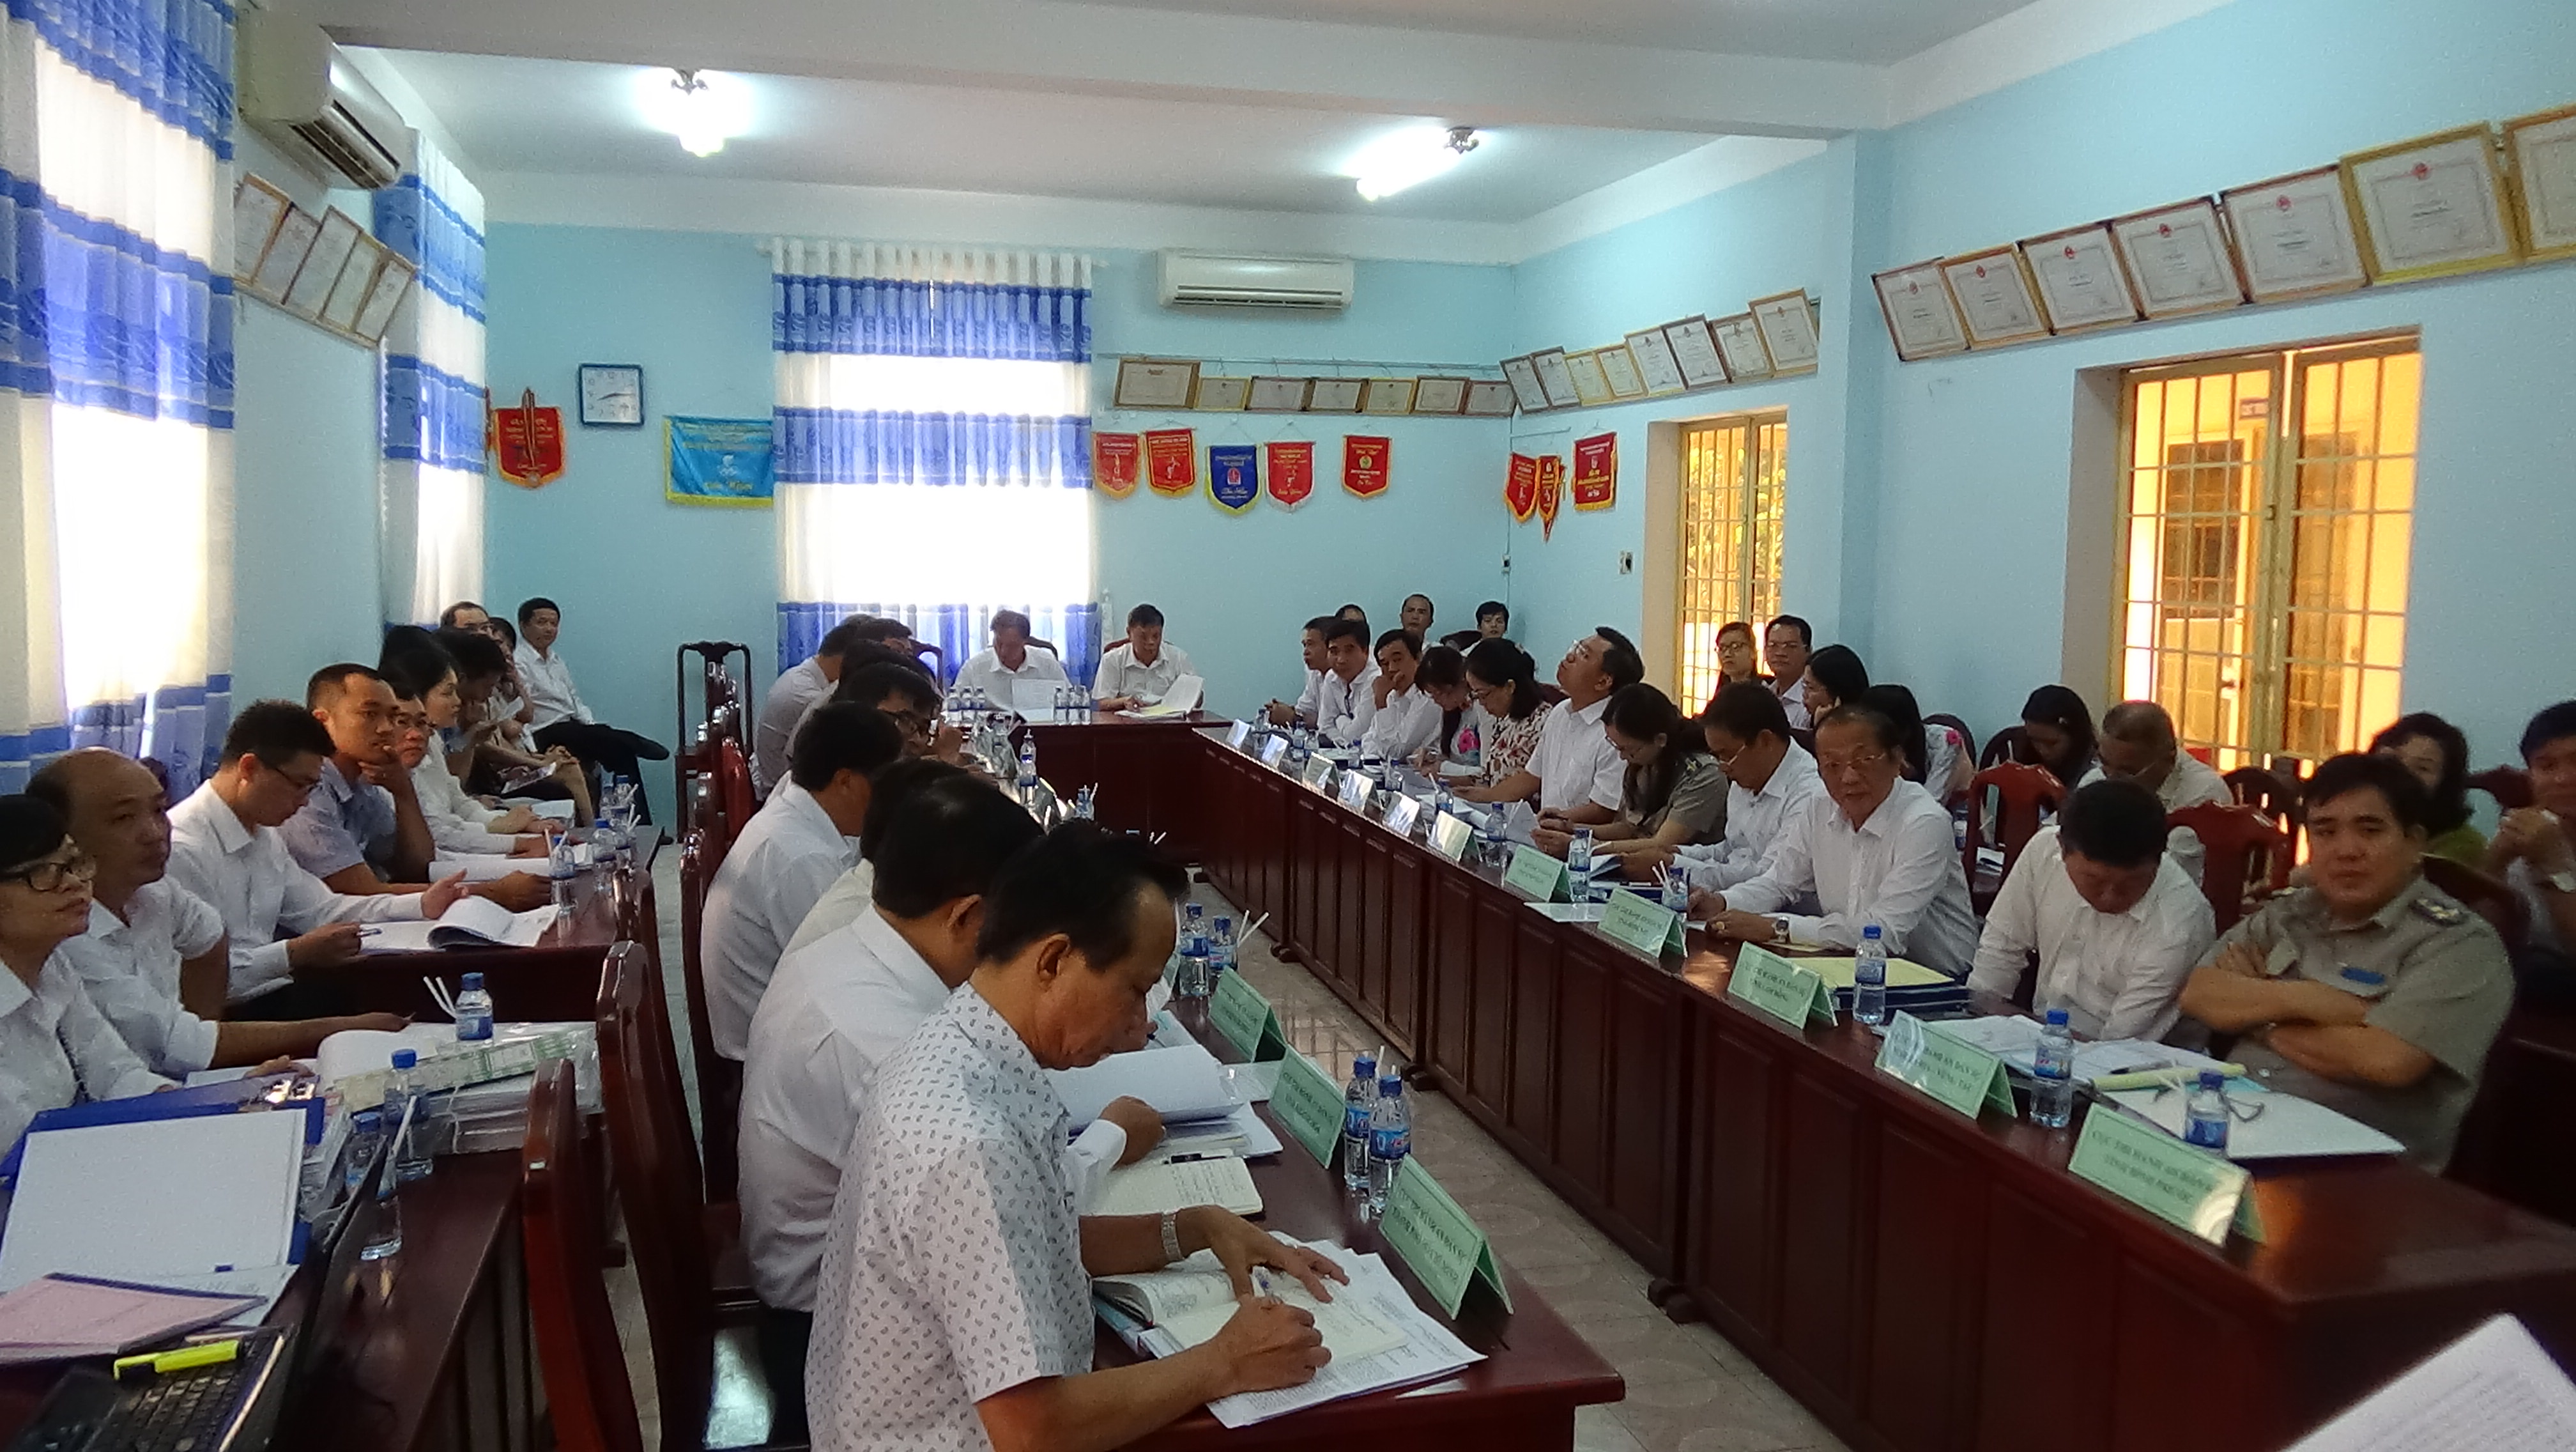 Cục Thi hành án dân sự tỉnh Ninh Thuận chủ trì tổ chức kiểm tra phong trào thi đua Khối cơ quan Thi hành án dân sự Khu vực Thi đua các tỉnh  Miền Đông Nam bộ năm 2018